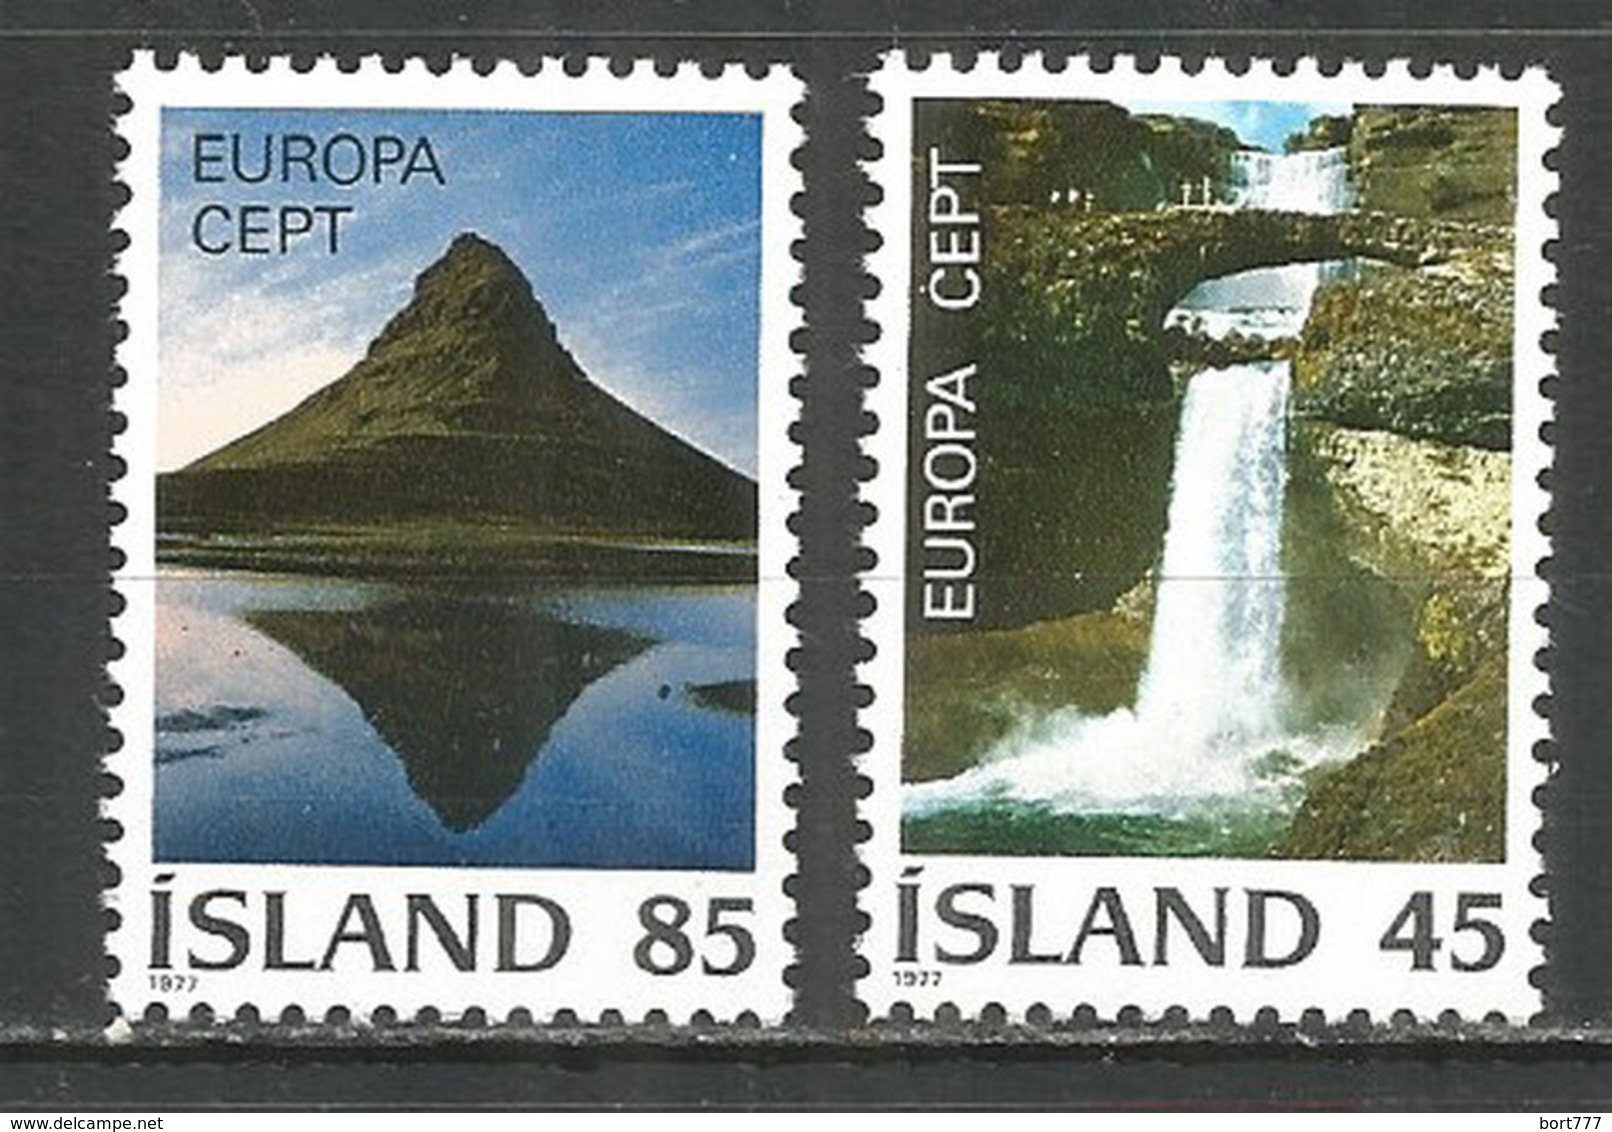 Iceland 1977 Mint Stamps MNH(**)  Set Europa Cept - Ongebruikt